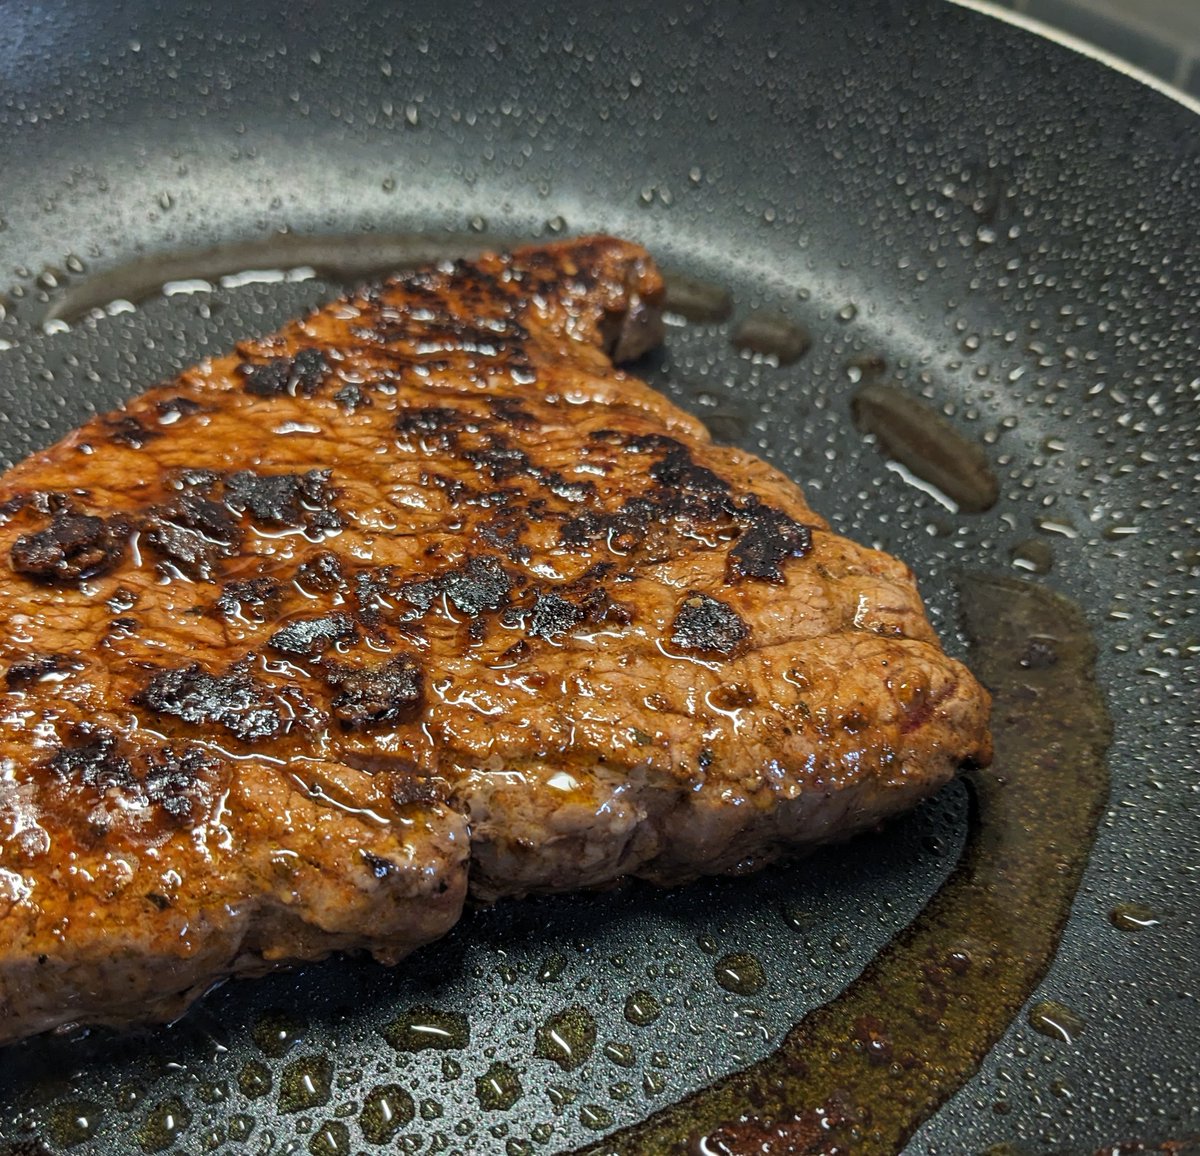 Let just enjoy what we can😉 Steak is always the last resort🥩 #Beef #steak #beefsteak #foodies #FoodLovers #lunchtime #grill